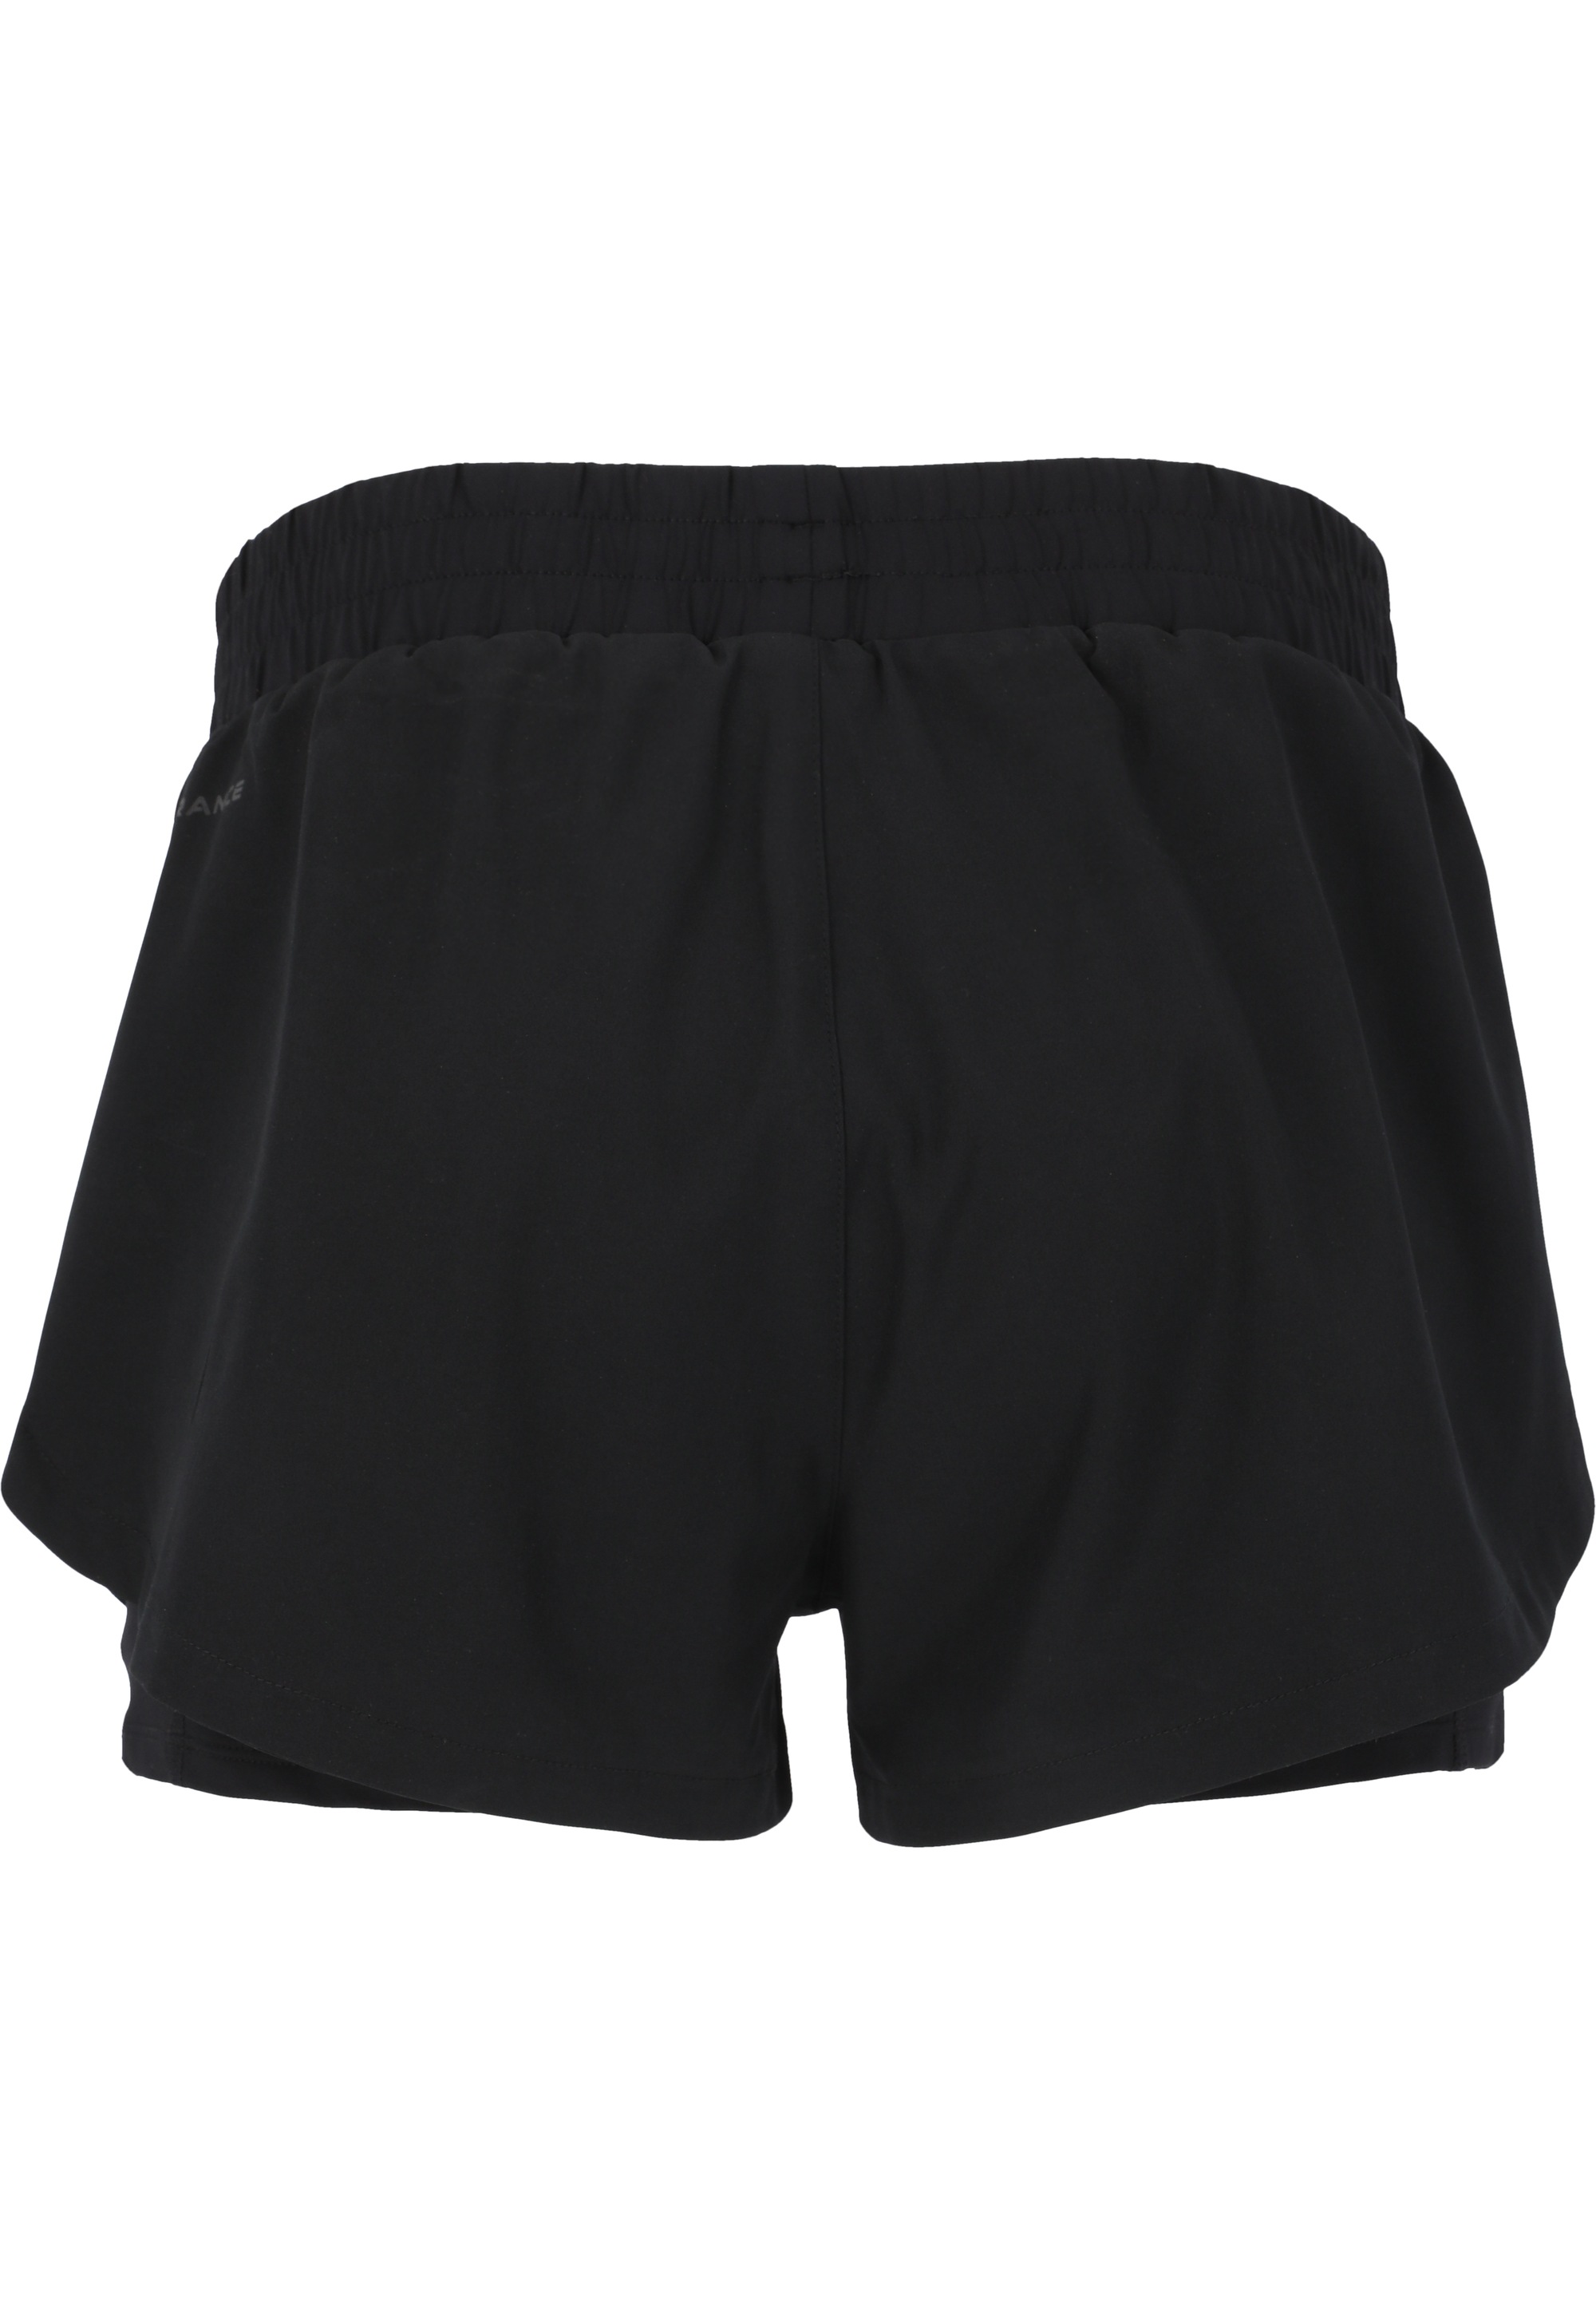 ENDURANCE Shorts »Yarol«, mit shoppen praktischer 2-in-1-Funktion